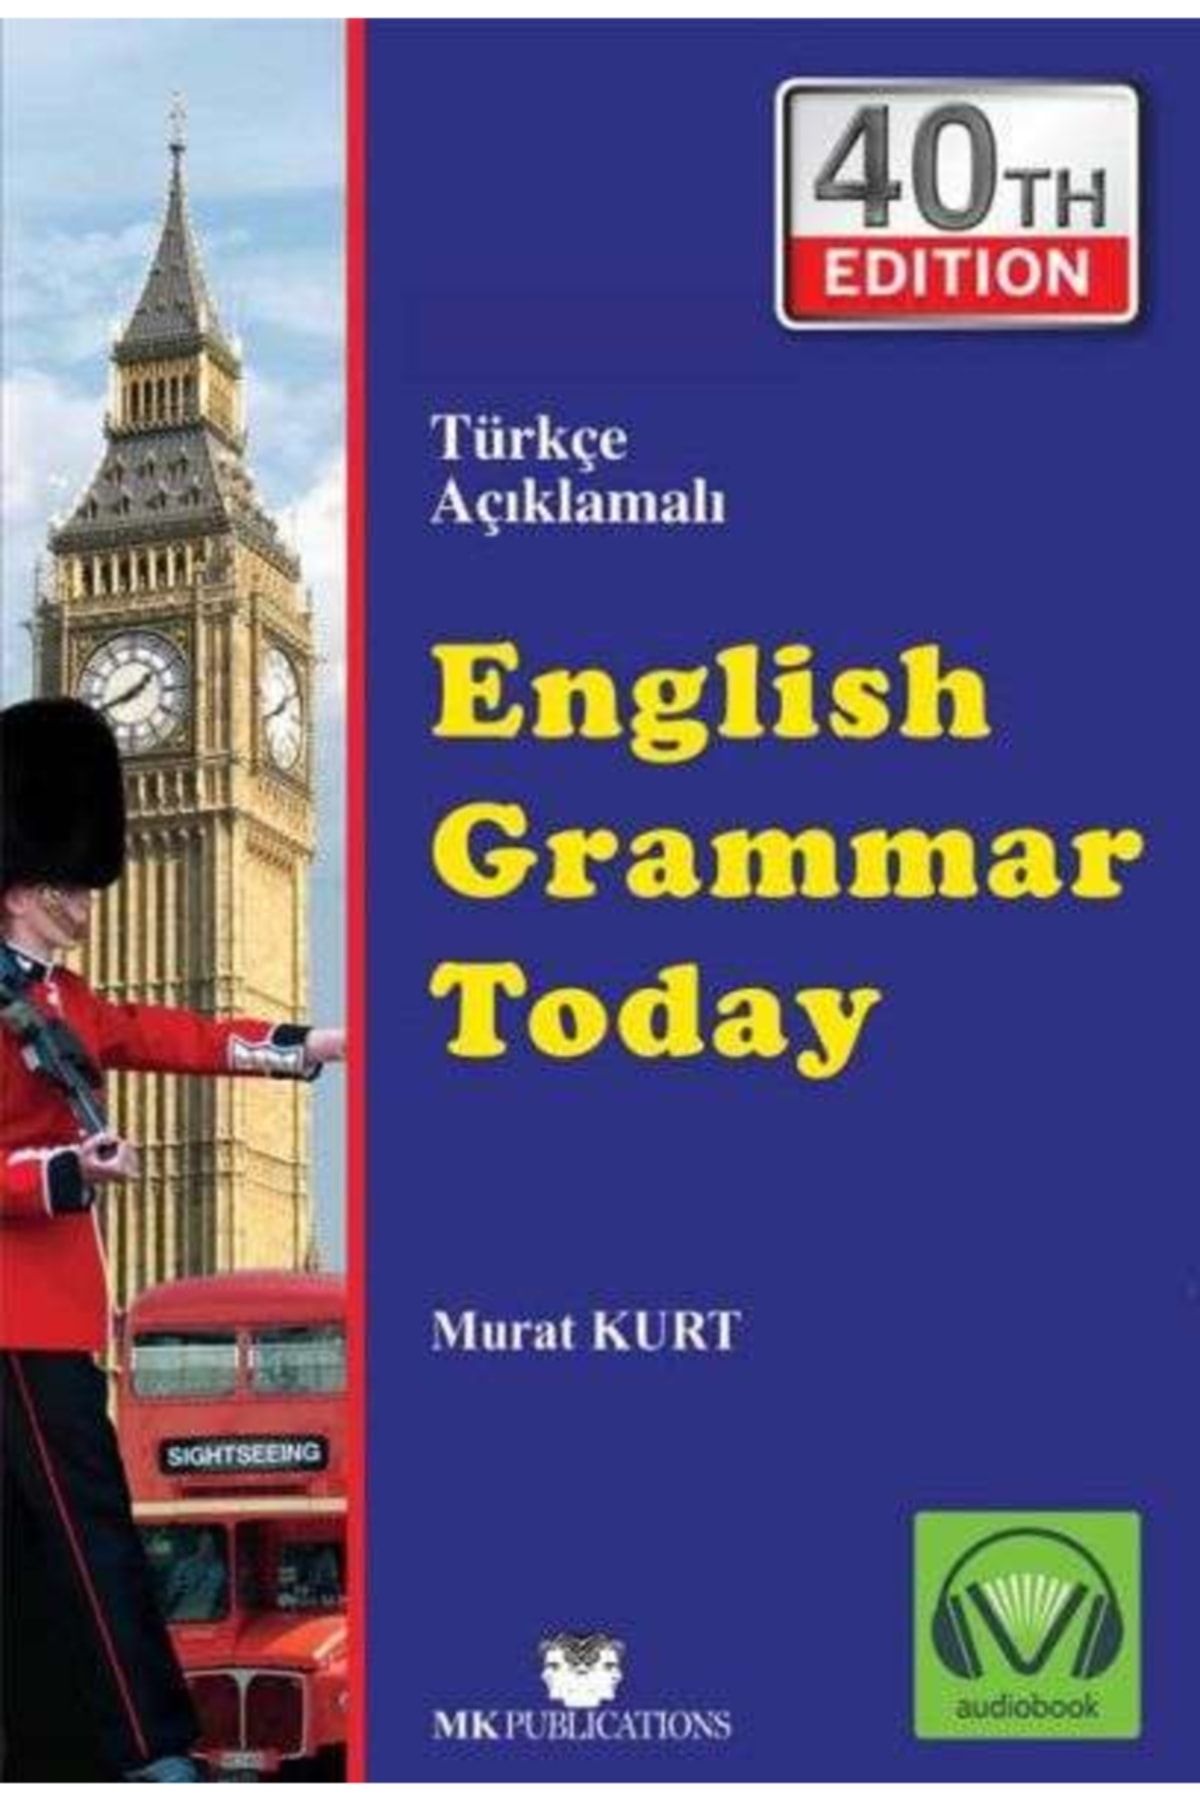 MK Publications English Grammar Today Türkçe Açıklamalı Ingilizce Gramer